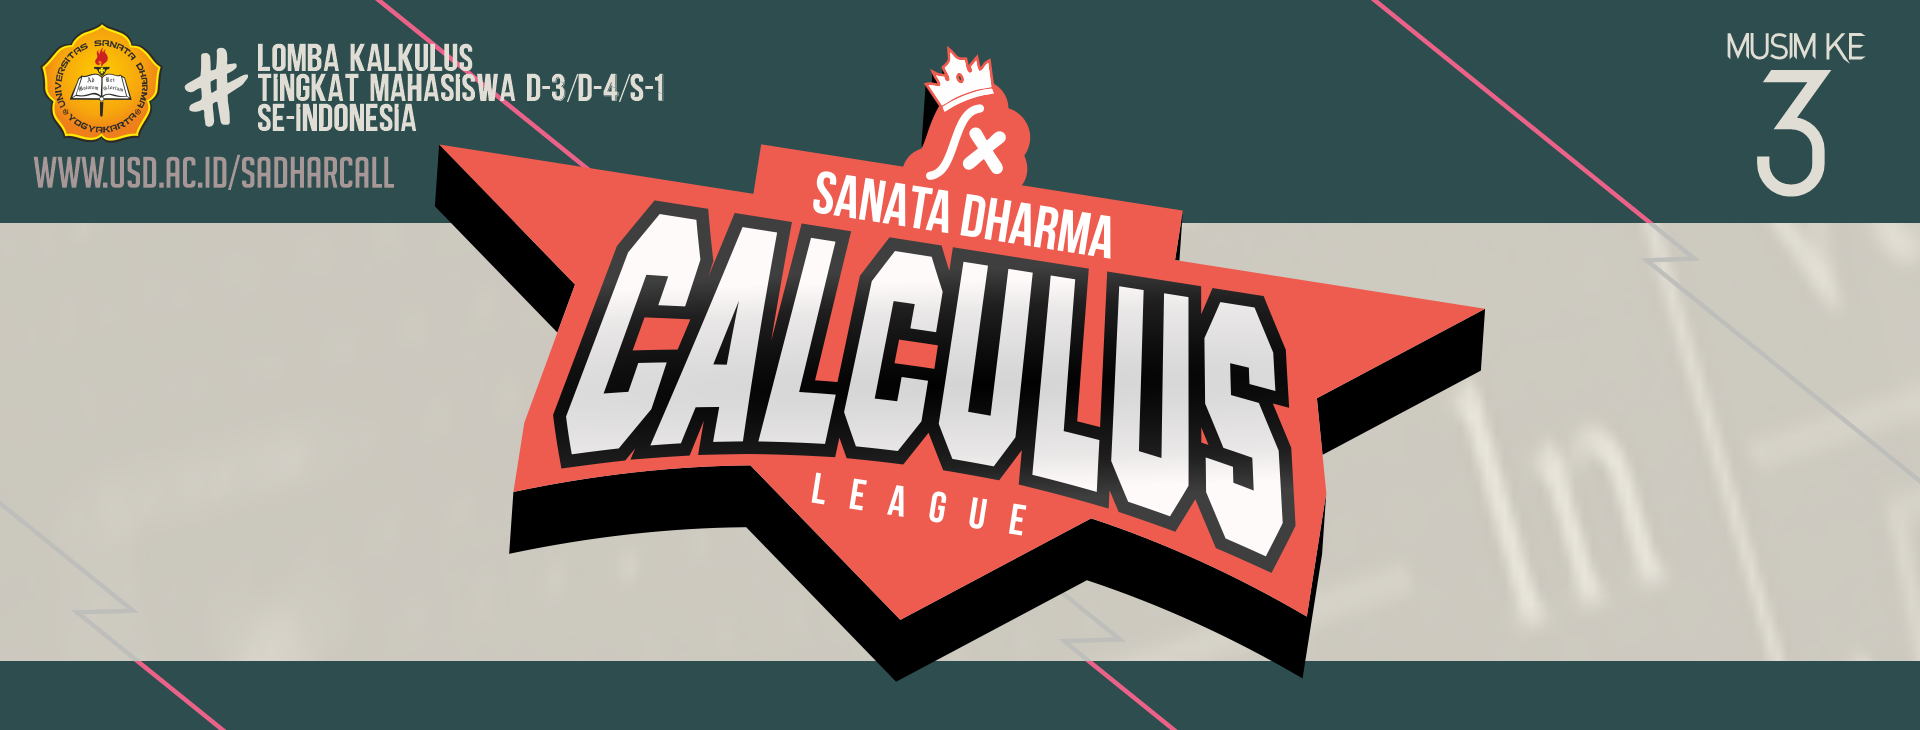 Sanata Dharma Calculus League 2021